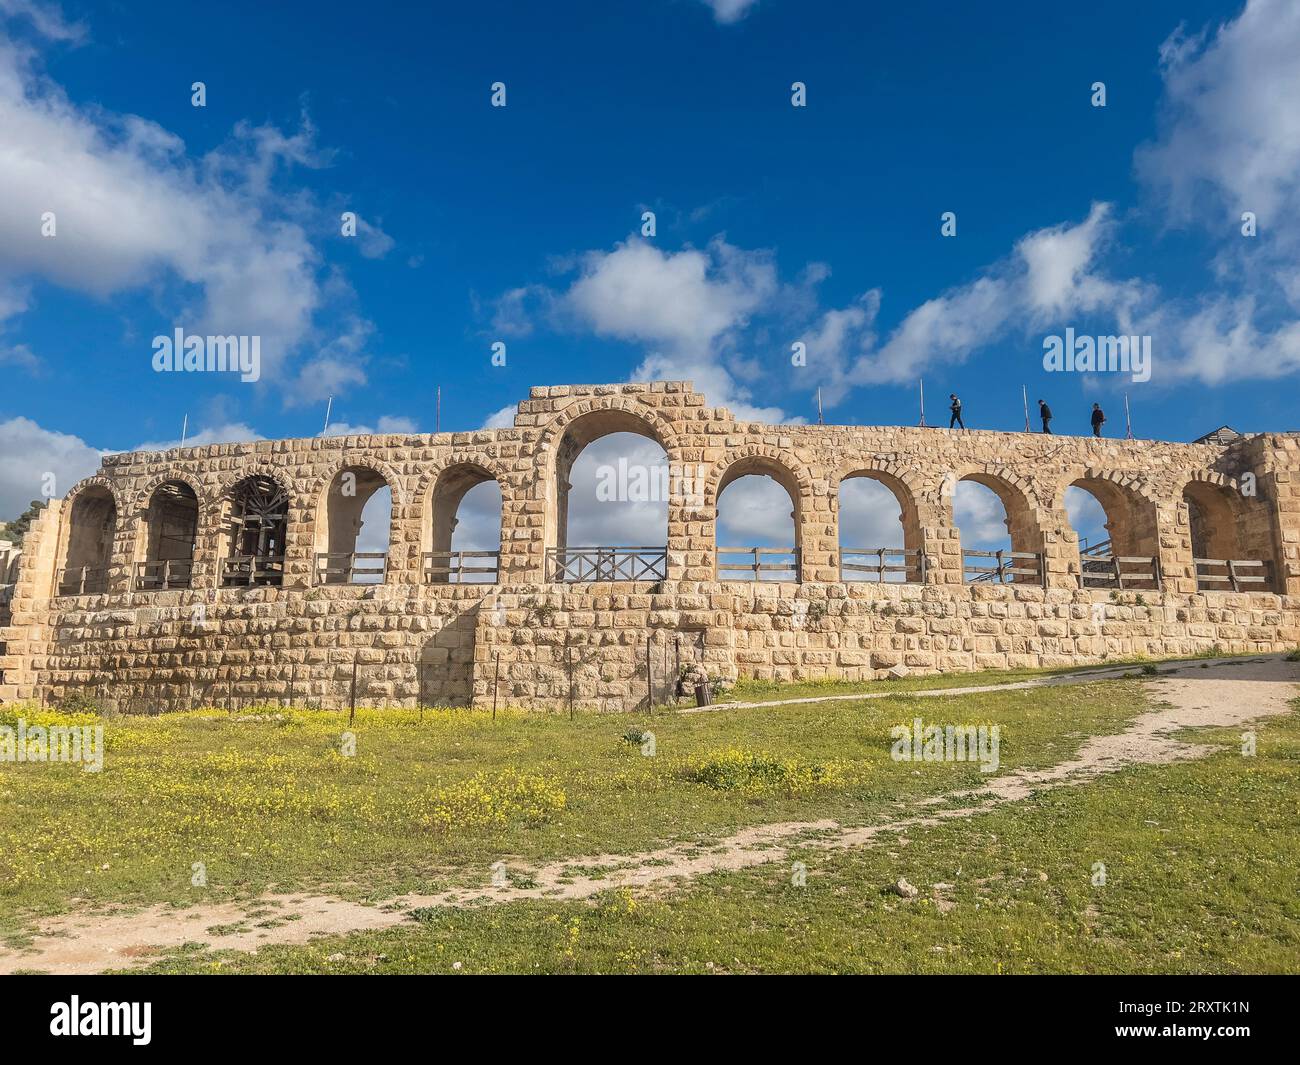 Ingresso all'ippodromo di Jerash, che si ritiene sia stato fondato nel 331 a.C. da Alessandro Magno, Jerash, Giordania, Medio Oriente Foto Stock